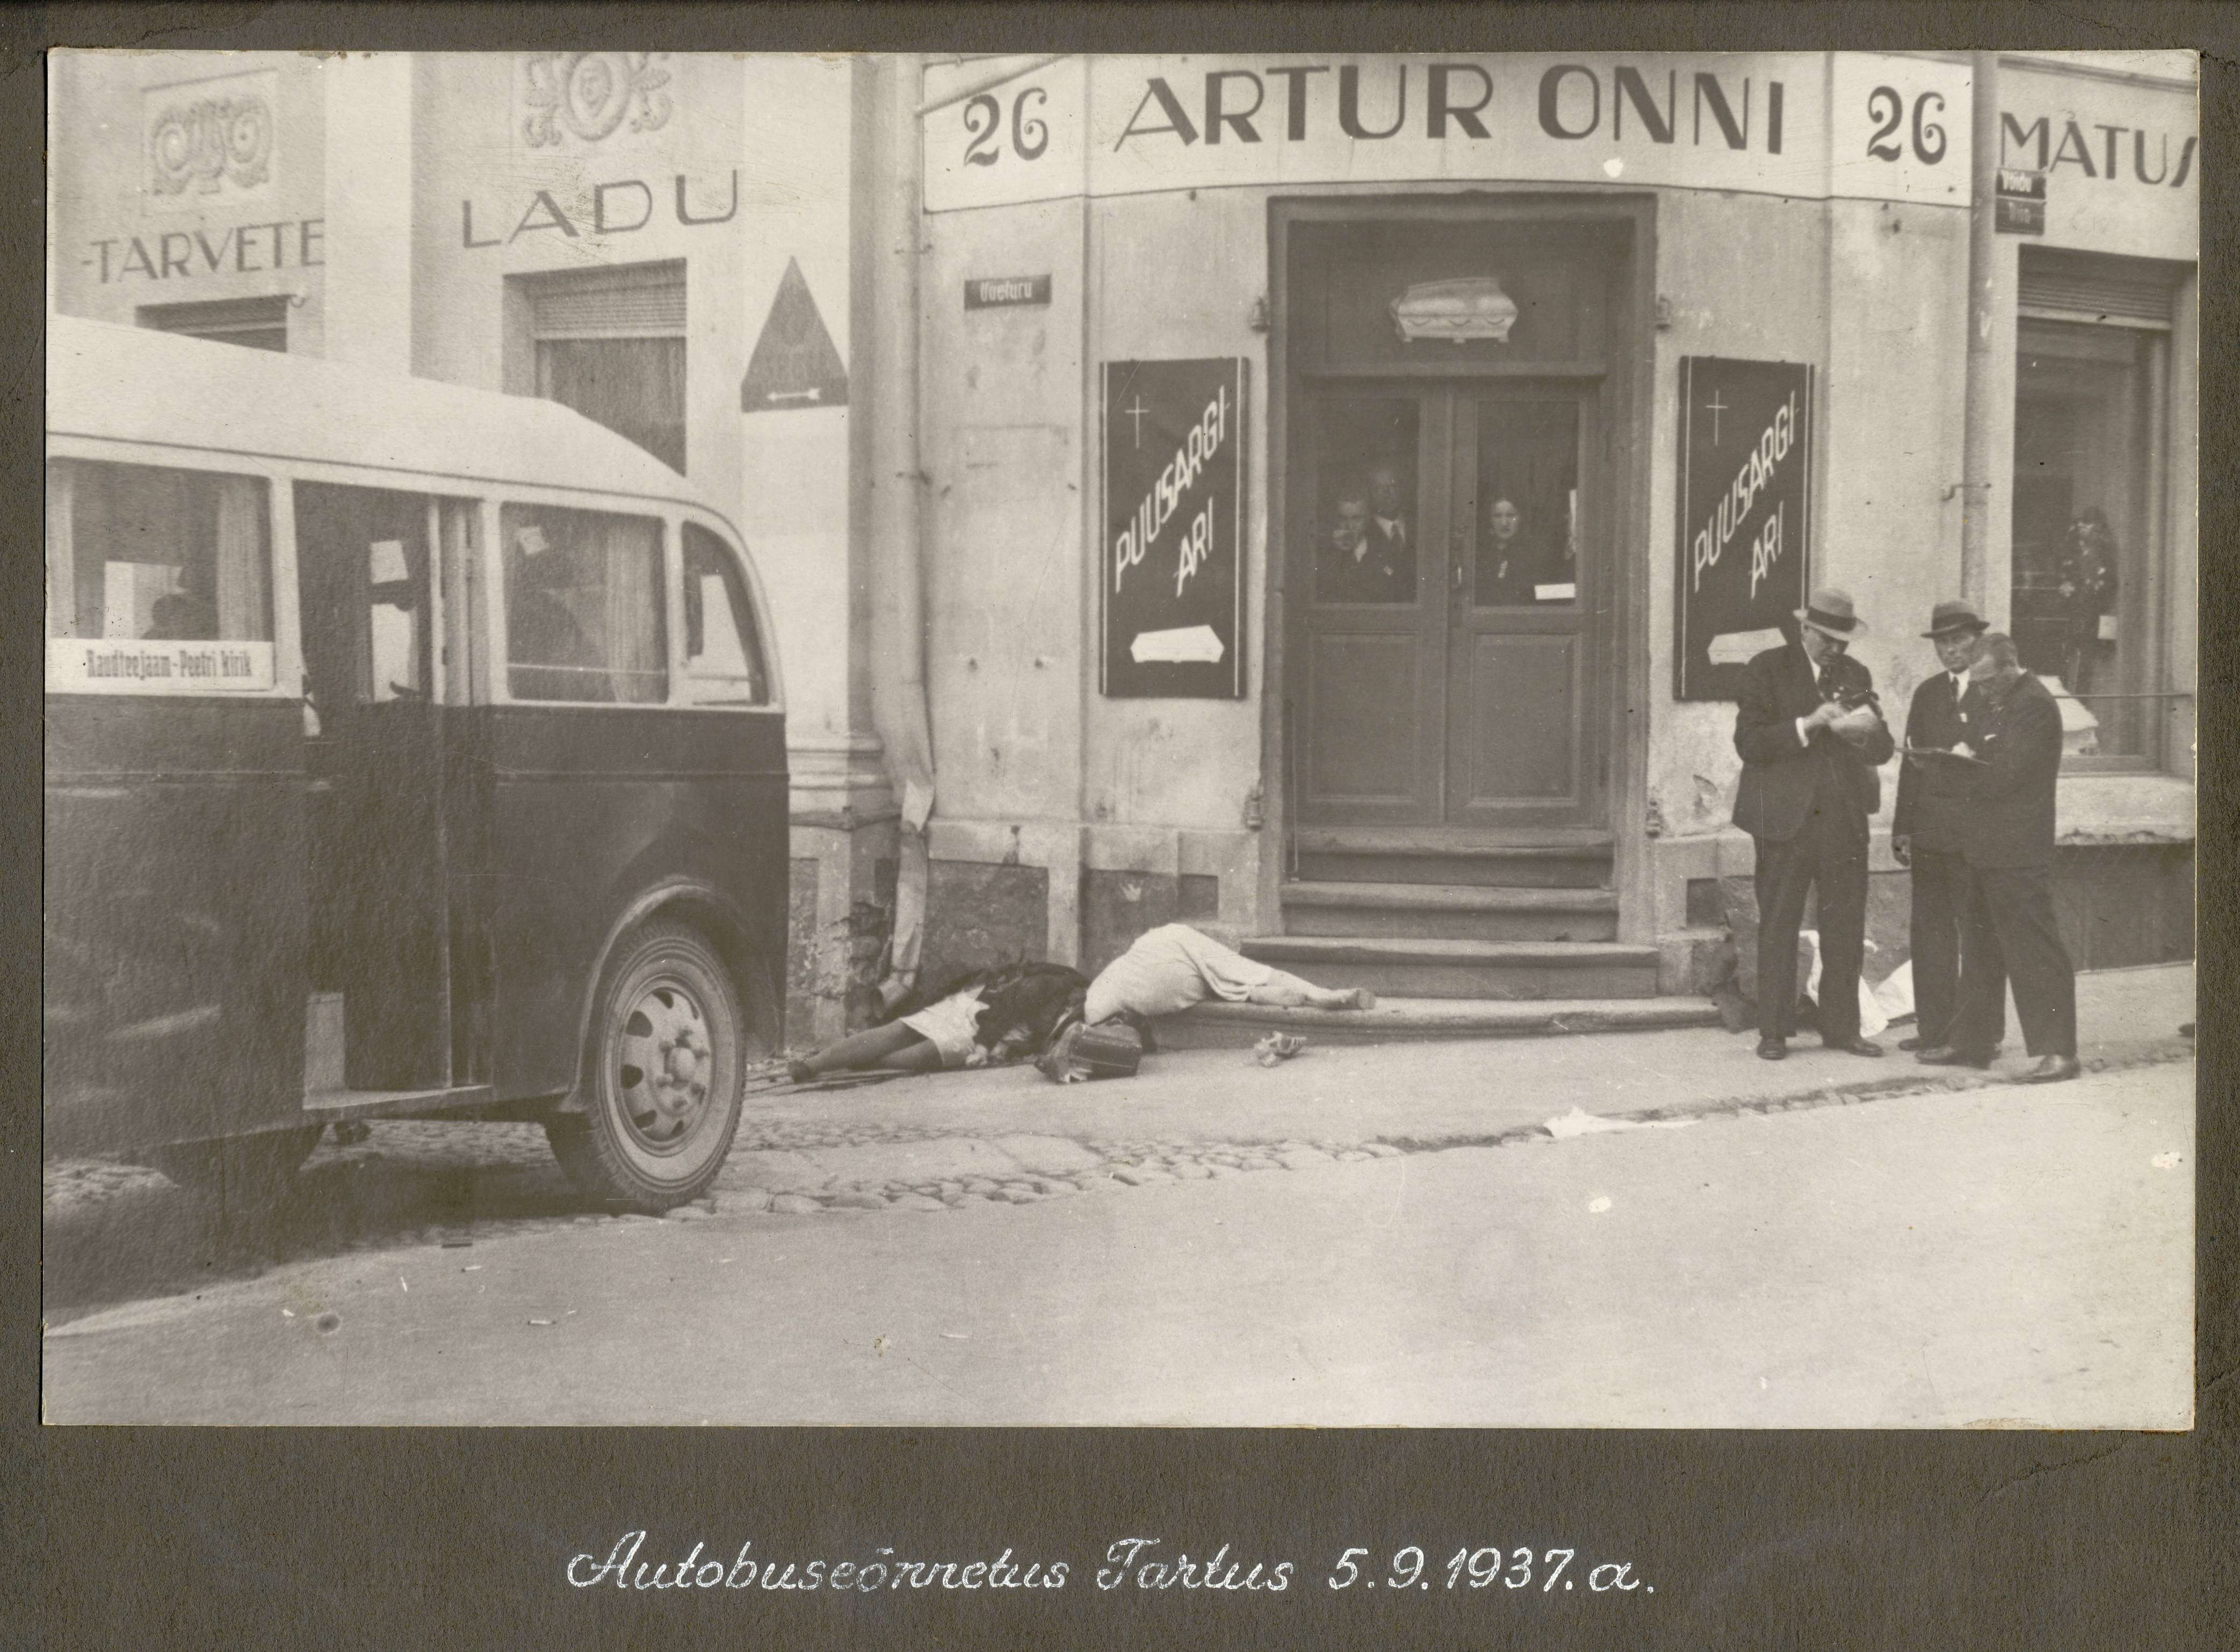 Surm varitseb ristteel. Pühapäeval, 5. septembril 1937, oli Tartus peetud põllumajandusnäitusele saabunud tuhandeid külalisi üle kogu maa. Sõitjaid tulvil moodne liinibuss liikus Barclay platsi poolt Aia tänava suunas. Samal ajal sõitis Aia mäest alla takso. Reguleerija näitas taksole sõidusuunda Uueturu tänavale ja peatas risttänavalt läheneva bussi. Viimane ei suutnud peatuda ja jätkas teed. Buss andis löögi sõiduautole ja pöördus veidi vasakule, sõites inimeste keskele kõnniteele. Masina peatas Uueturu j